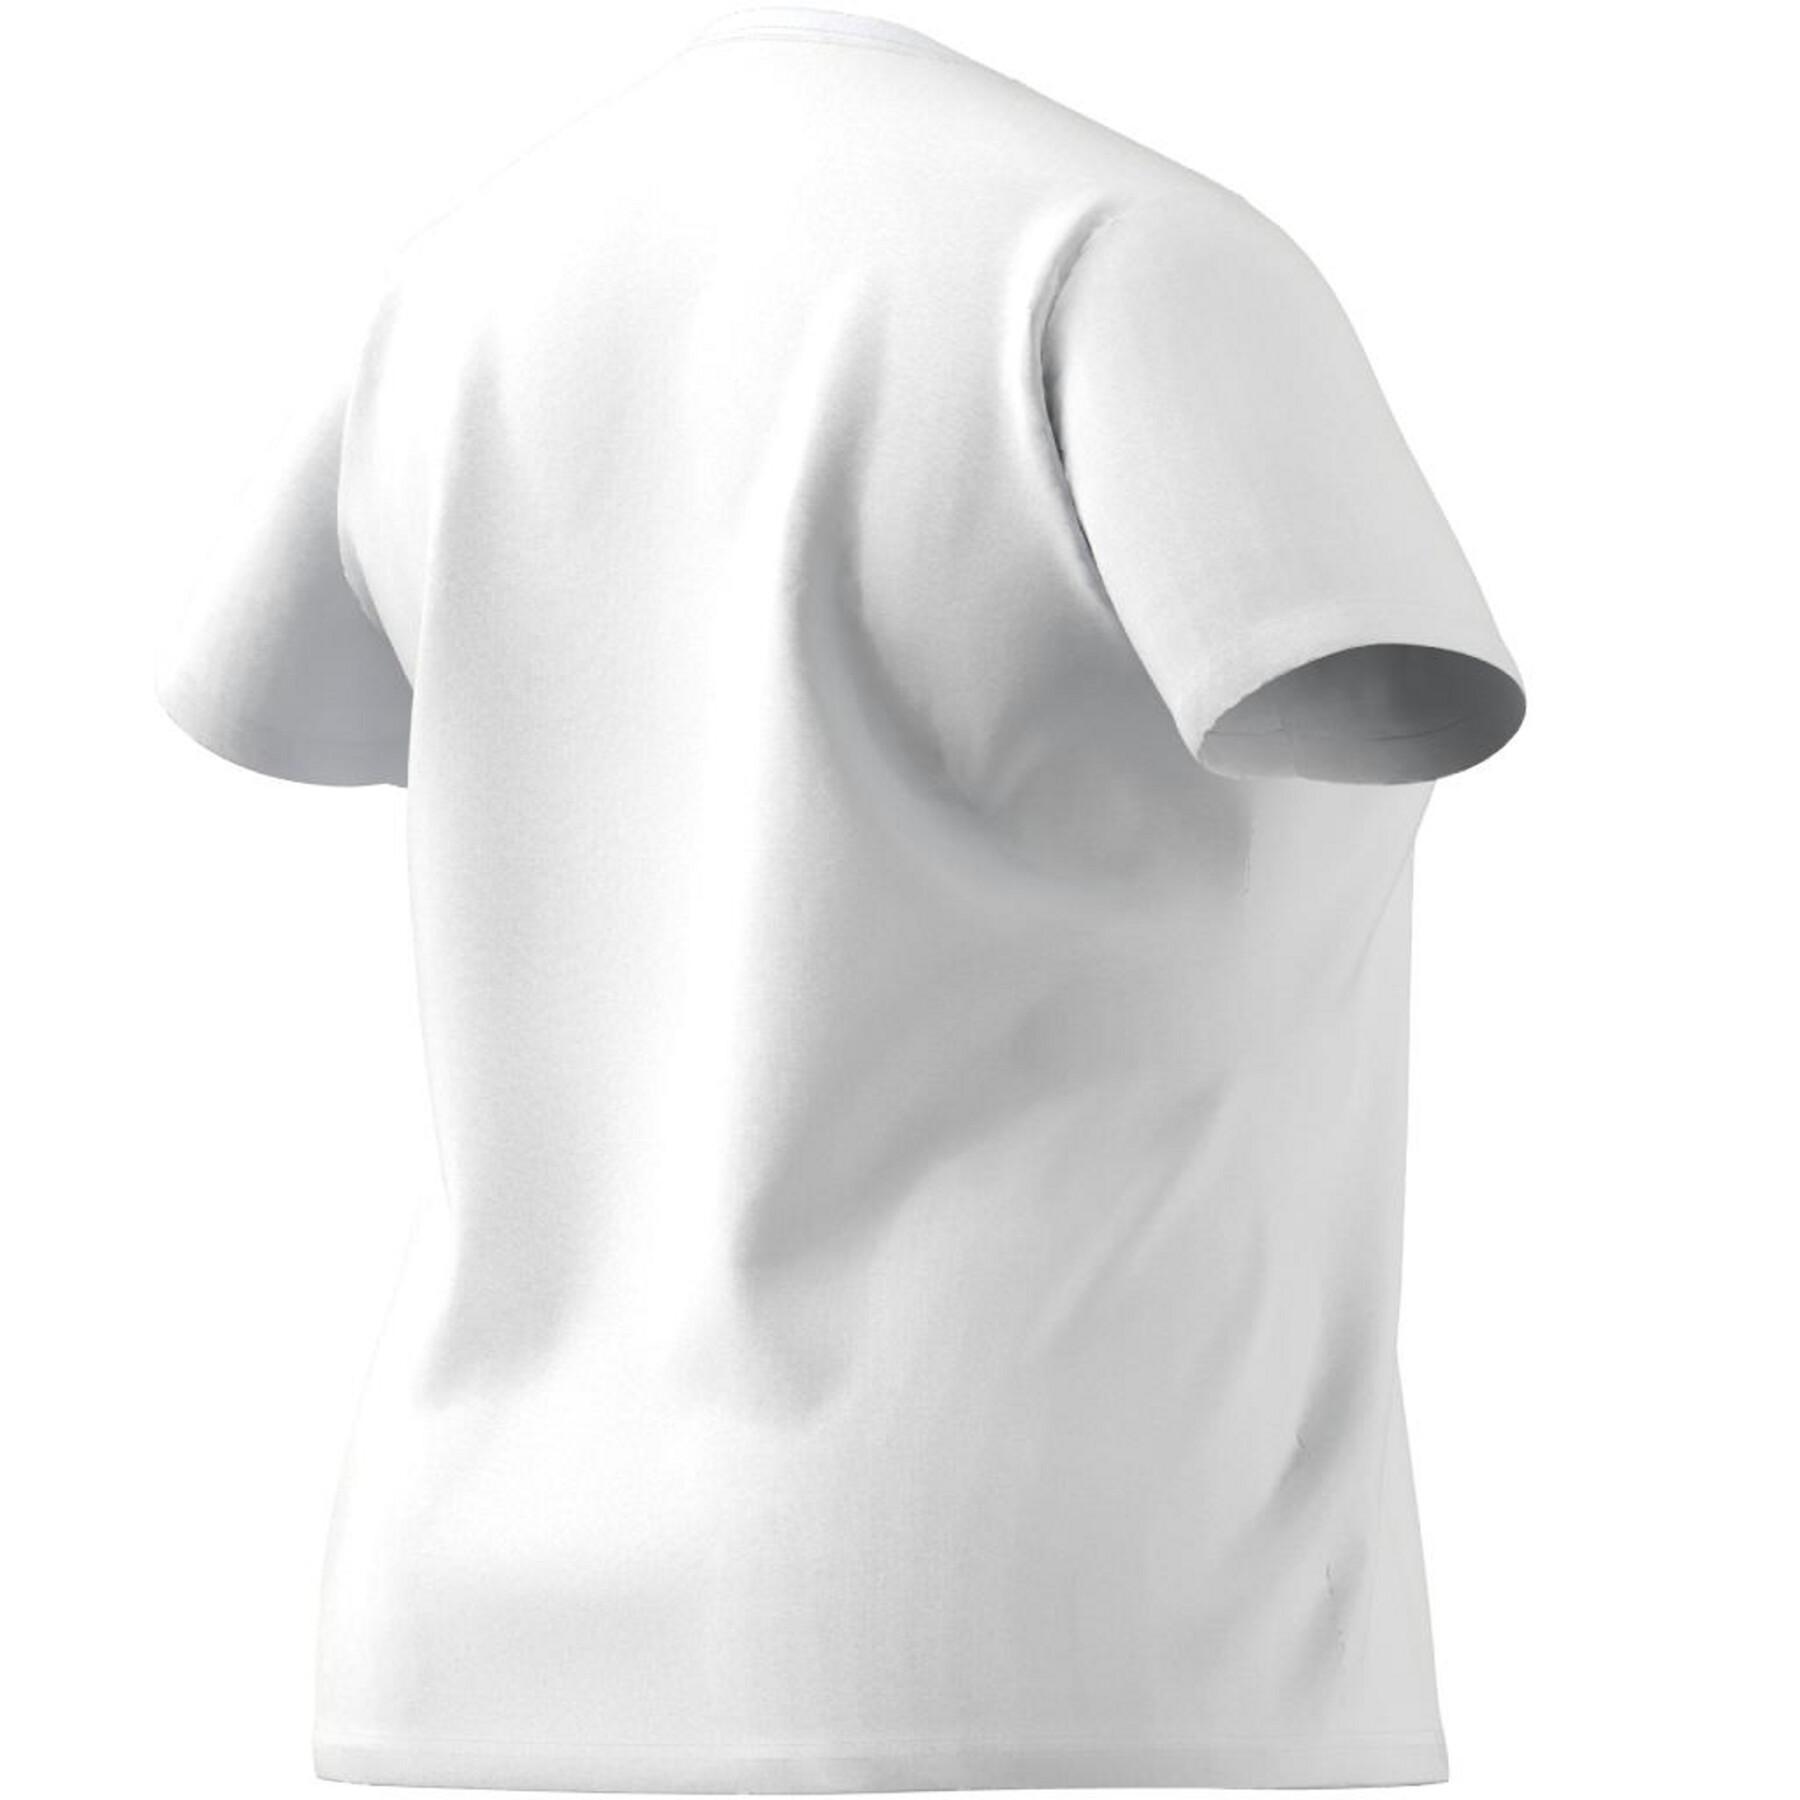 Koszulka damska w dużym rozmiarze adidas Essentials Logo